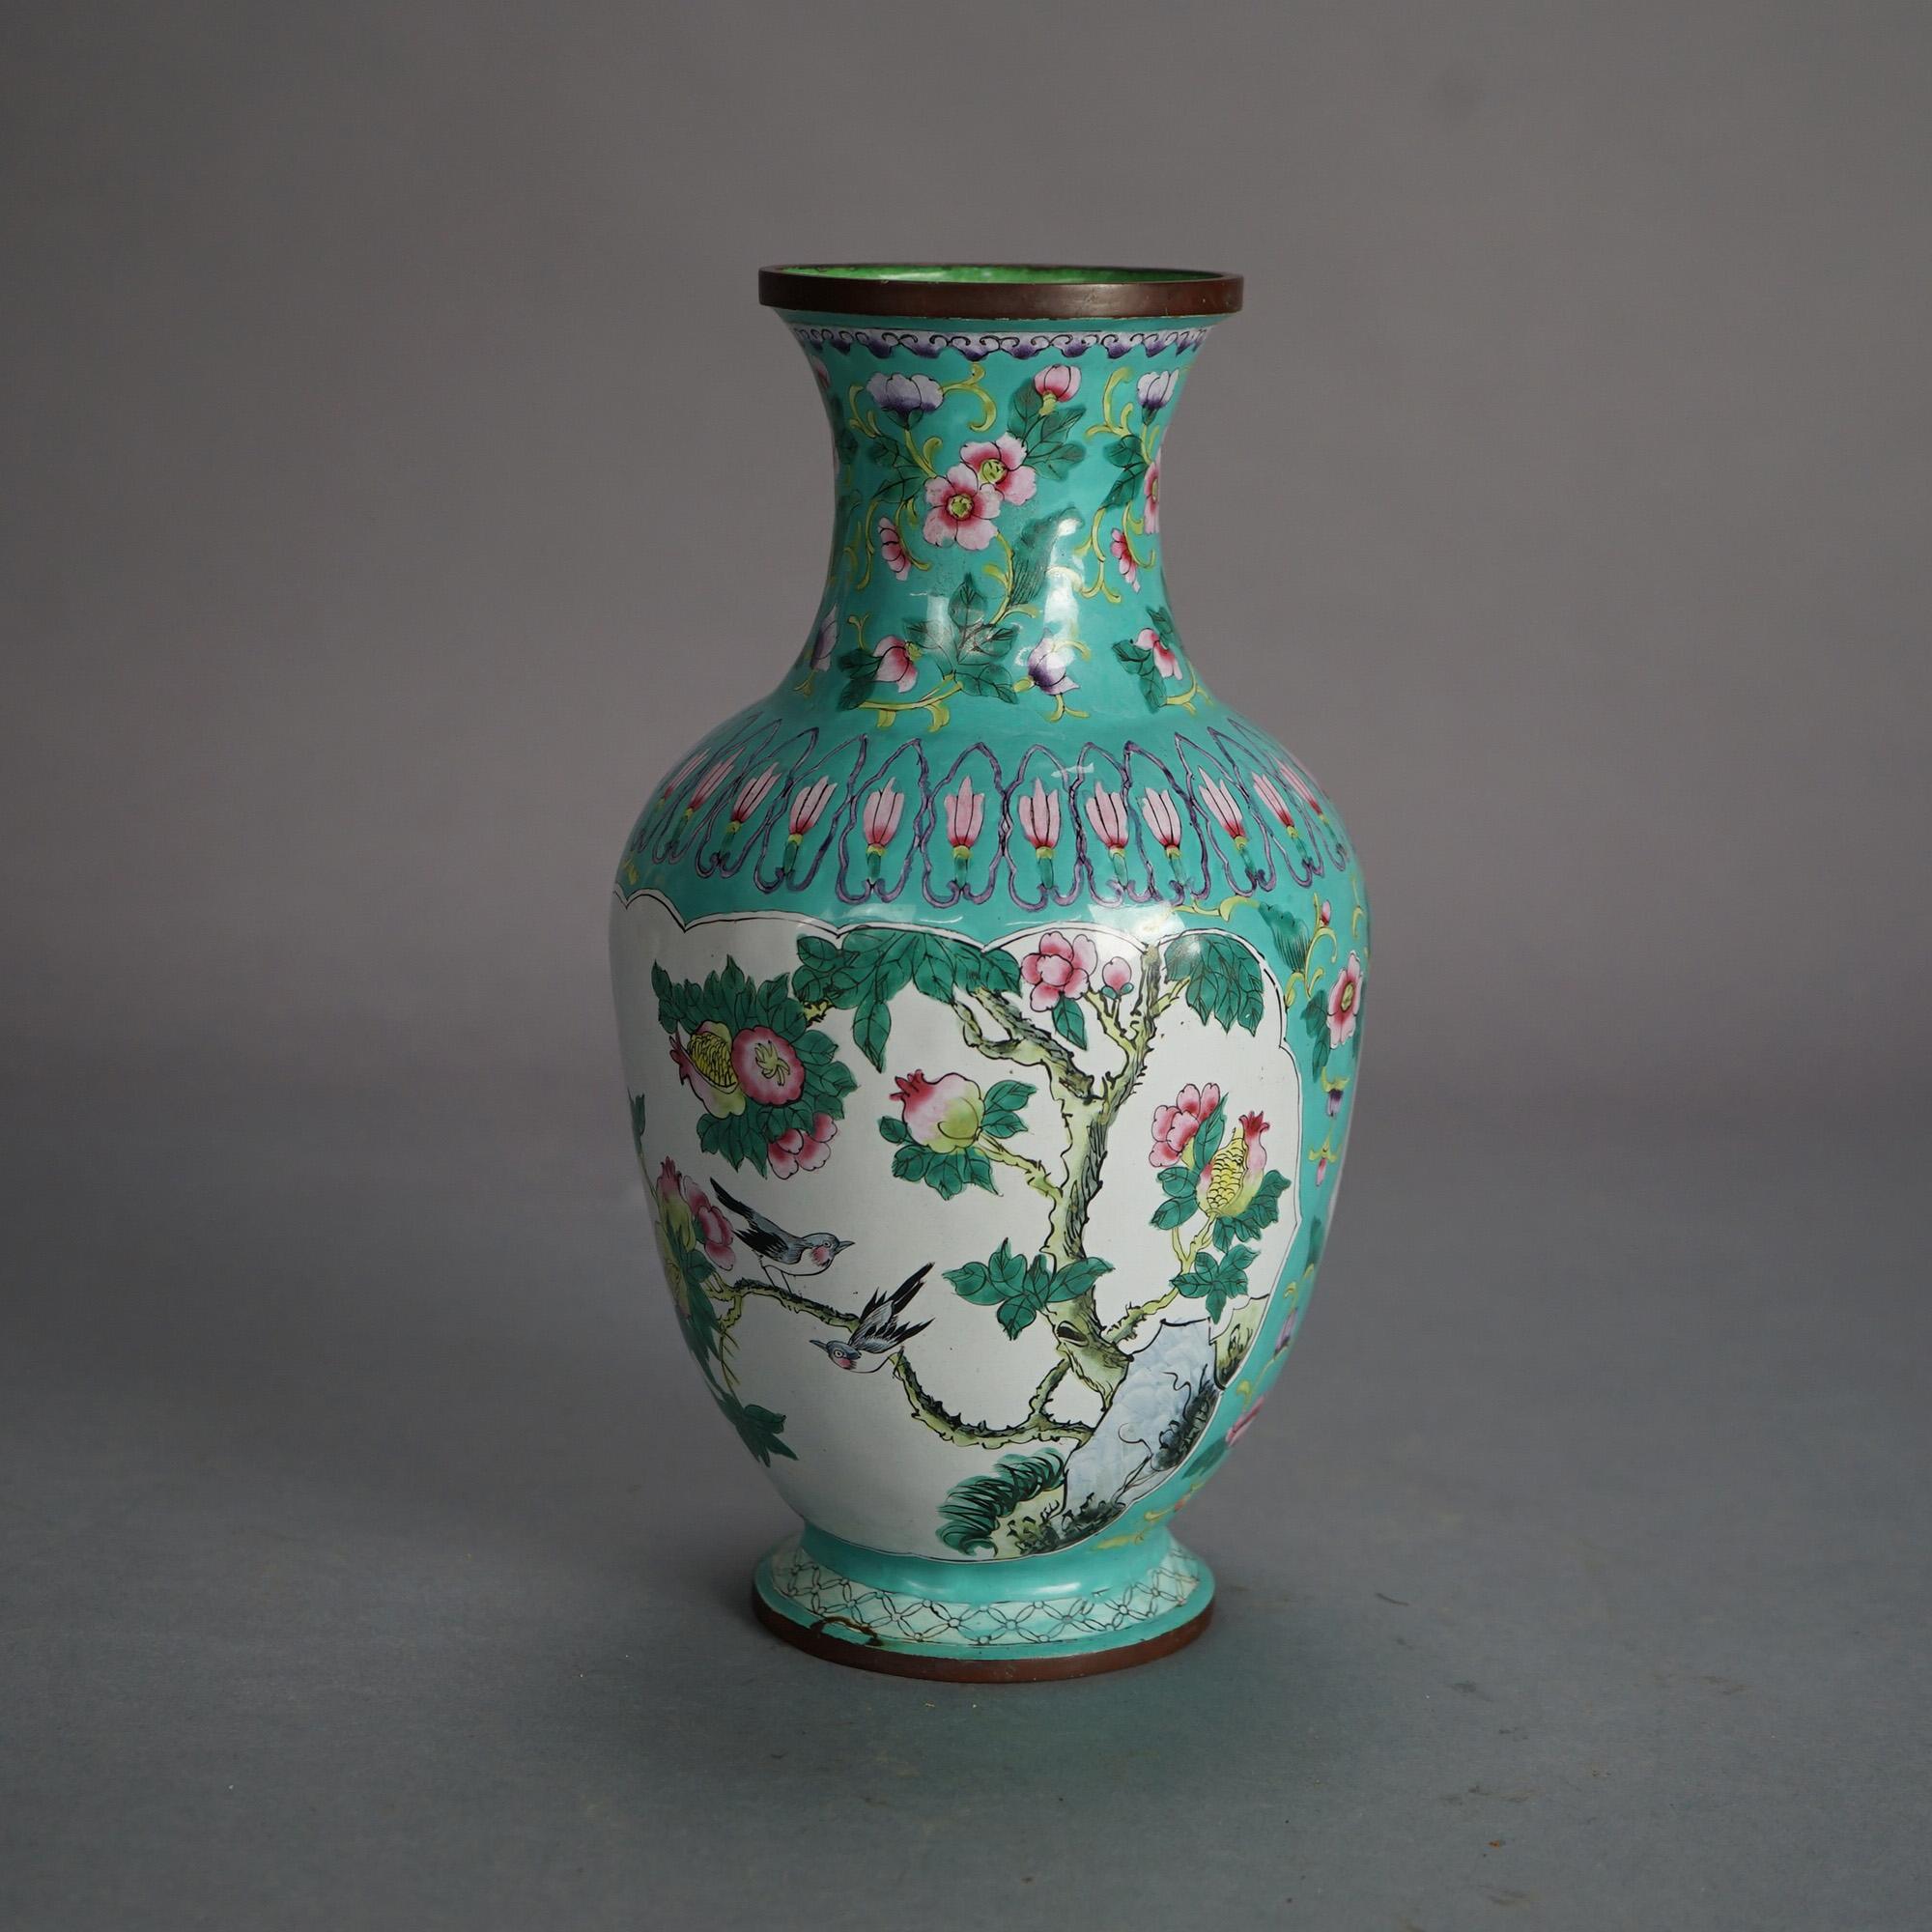 Chinese Enameled & Polychromed Vase with Garden Scene & Bird 20thC

Measures - 10